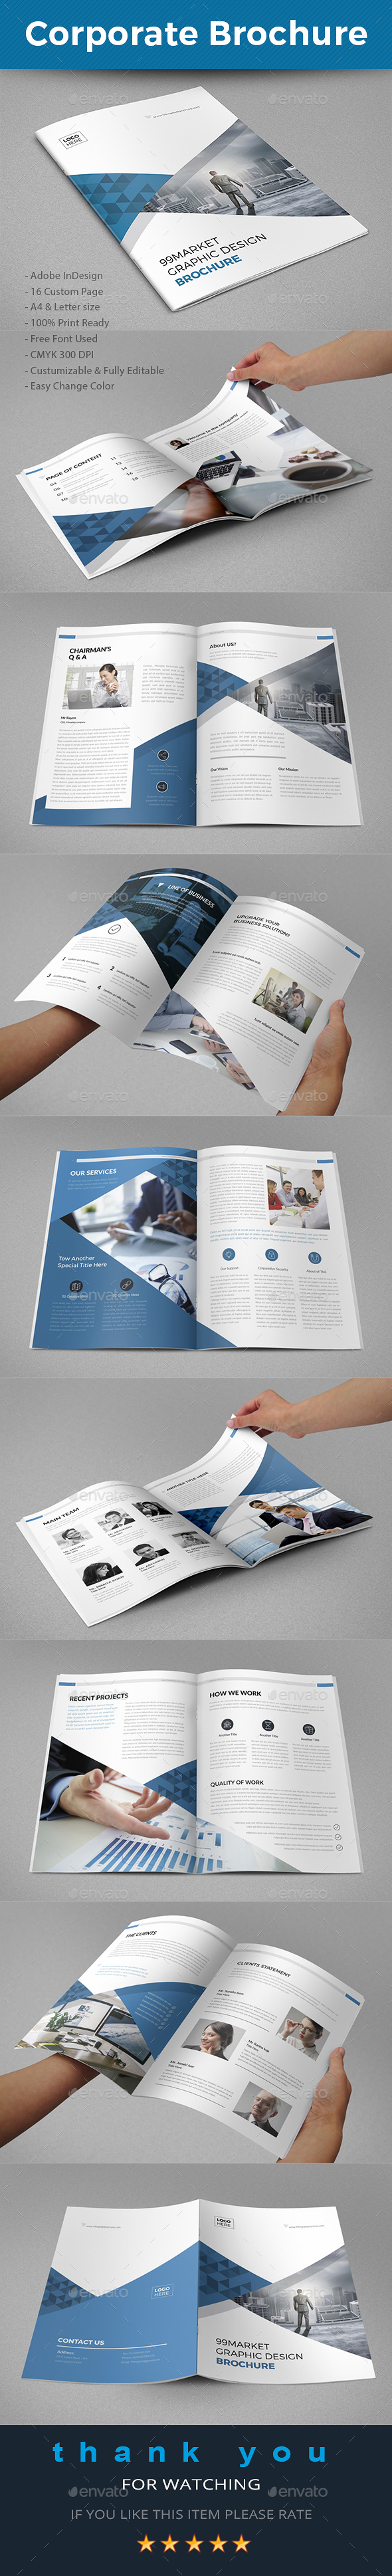 GraphicRiver Corporate Brochure 20830048